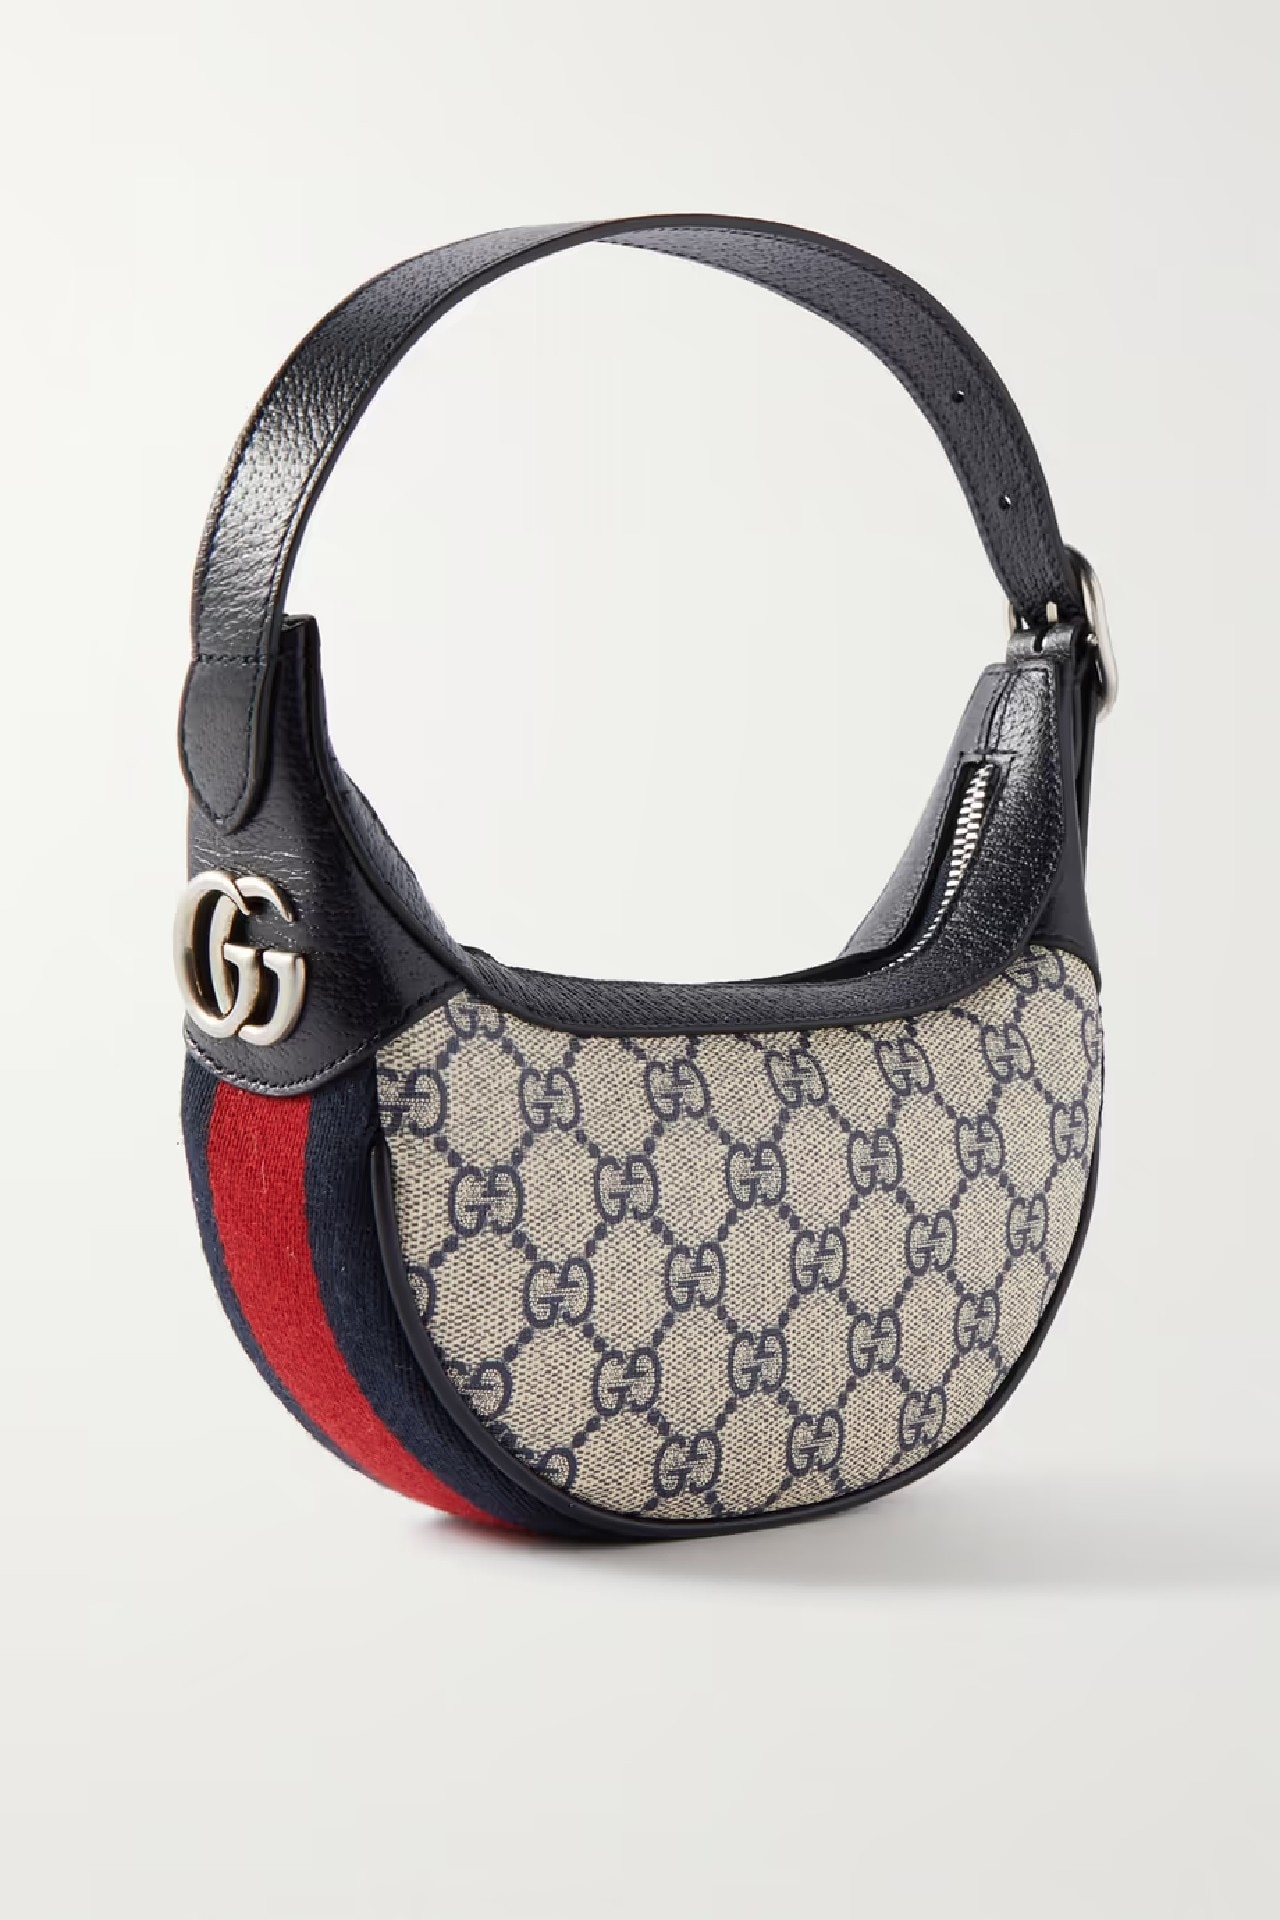 Top Gucci handbags for 2022